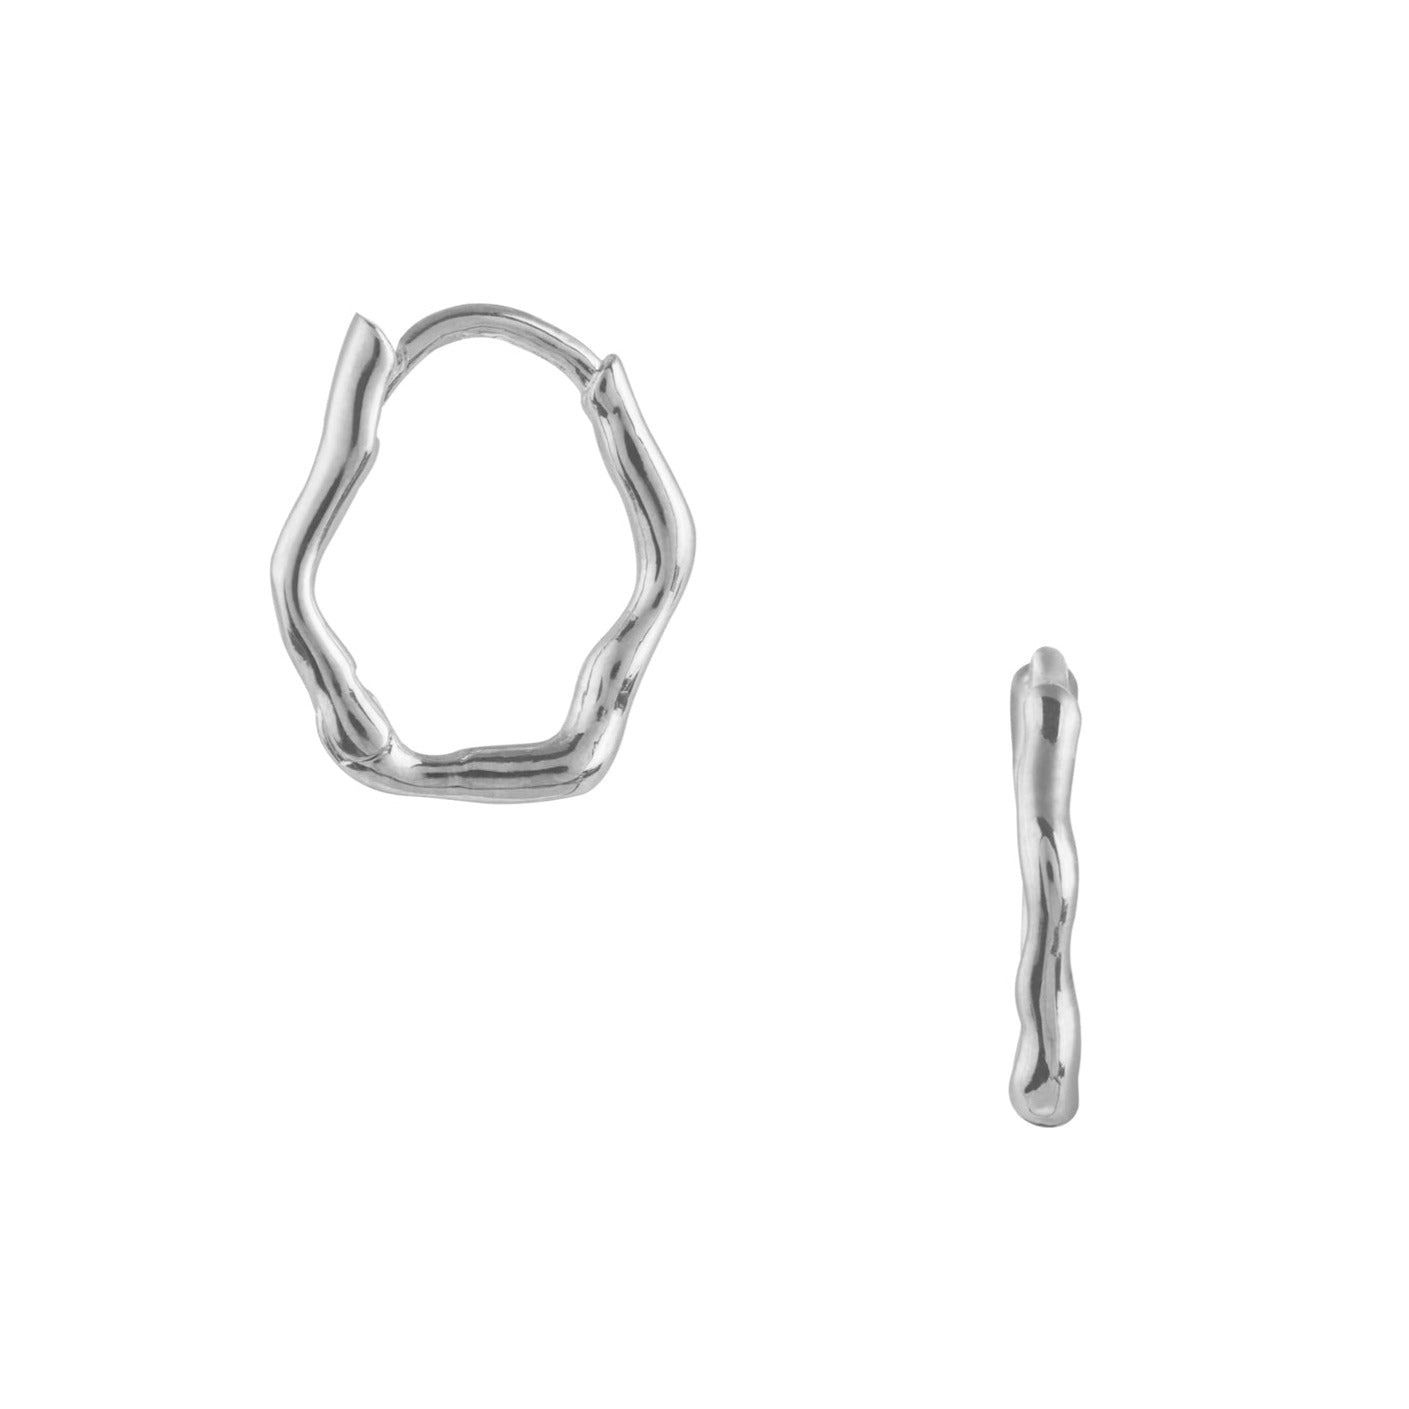 Sterling Silver Wave Huggie Hoop Earrings By Ania Haie, Orin Jewelers